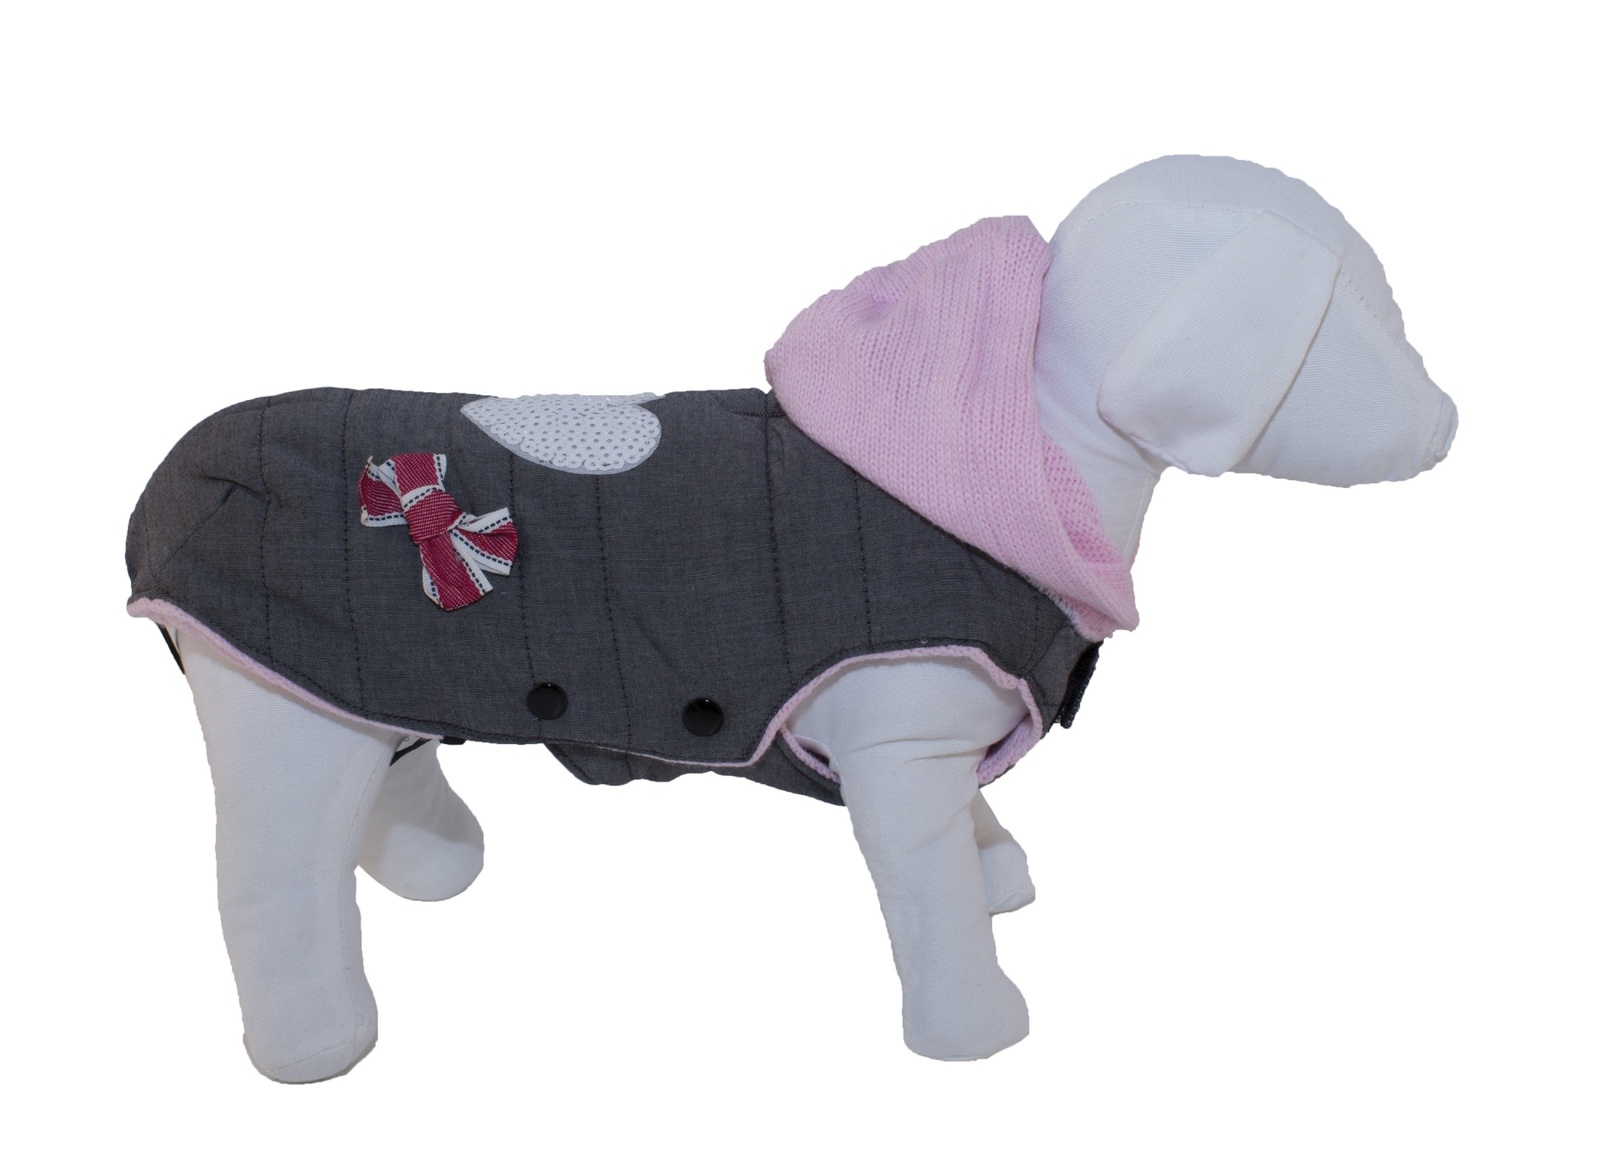 Ferribiella одежда Ferribiella одежда утепленный жилет с аппликацией и вязянным капюшоном Любимец, серый с розовым капюшоном (33 см)